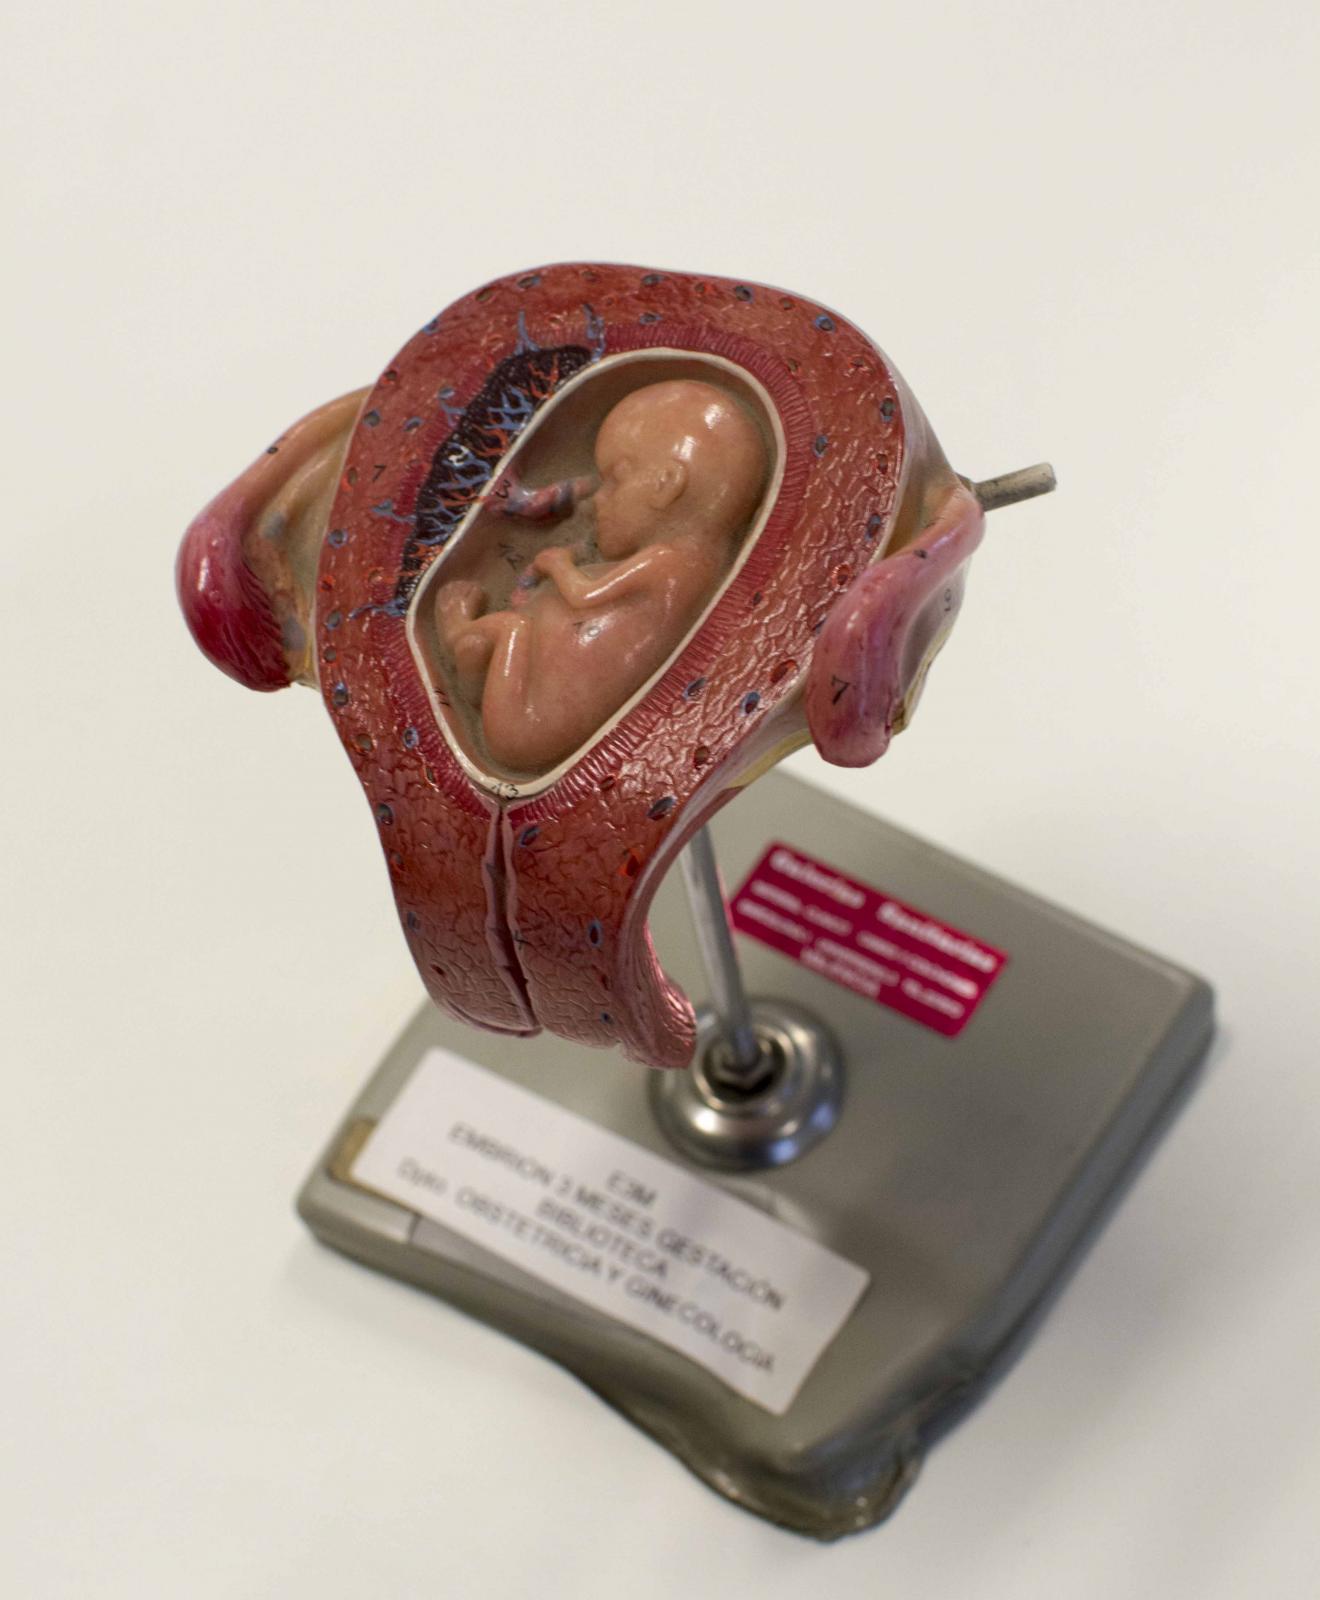 Representación realista de la cavidad uterina y un feto en su interior, sobre peana metálica gris